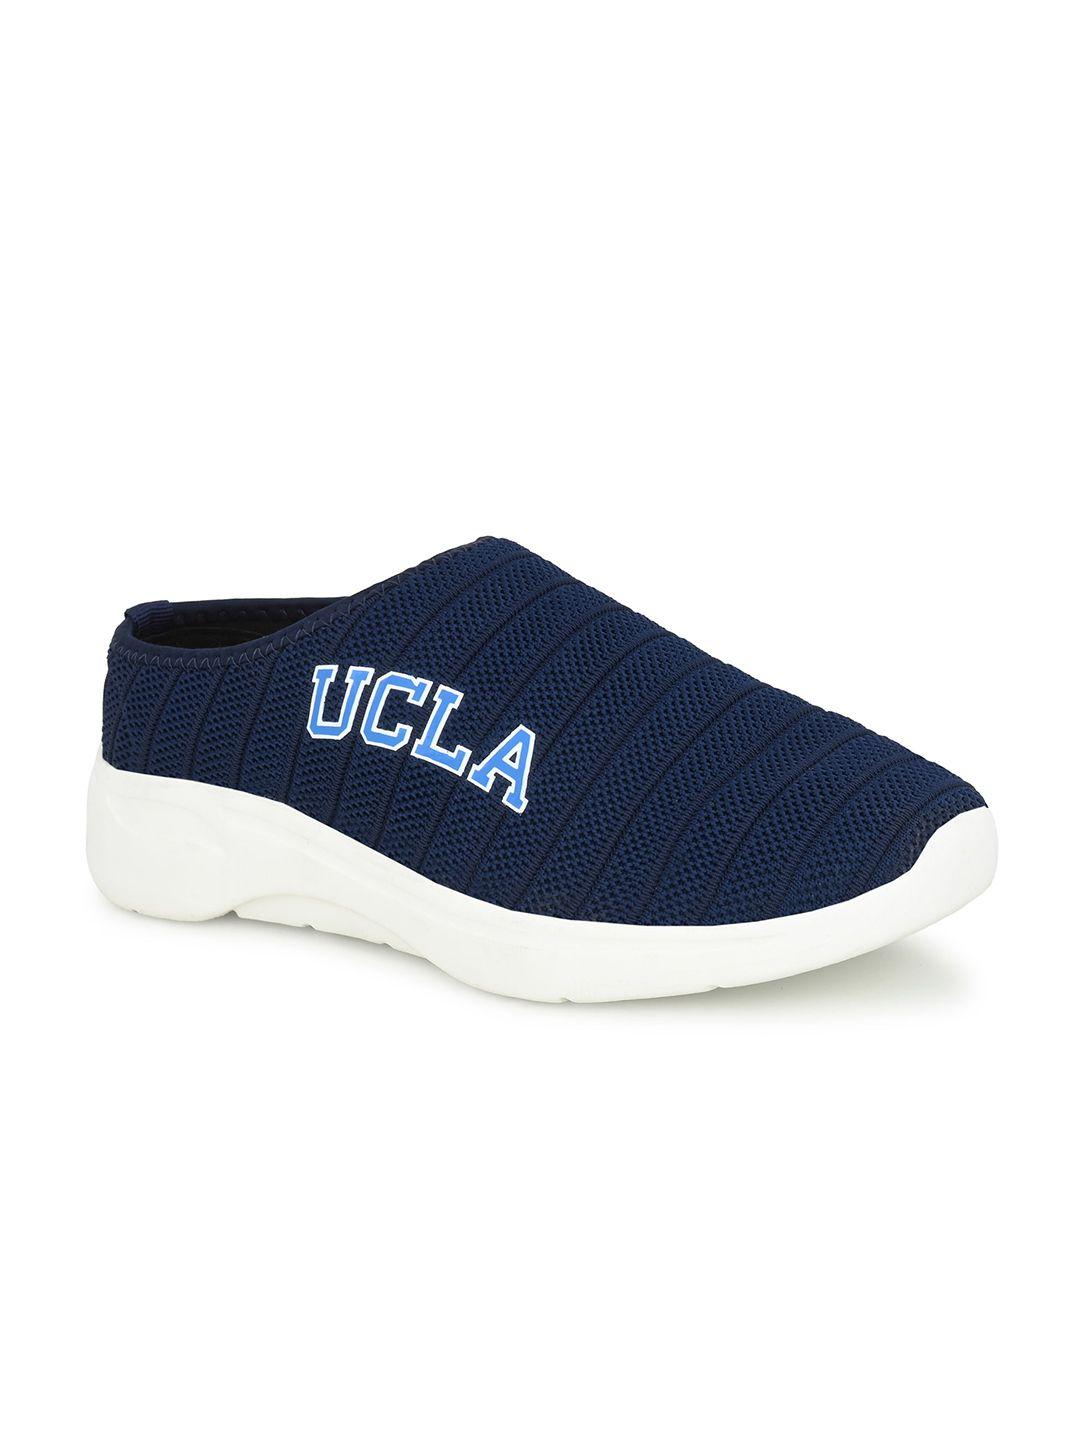 ucla-men-mesh-walking-non-marking-shoes